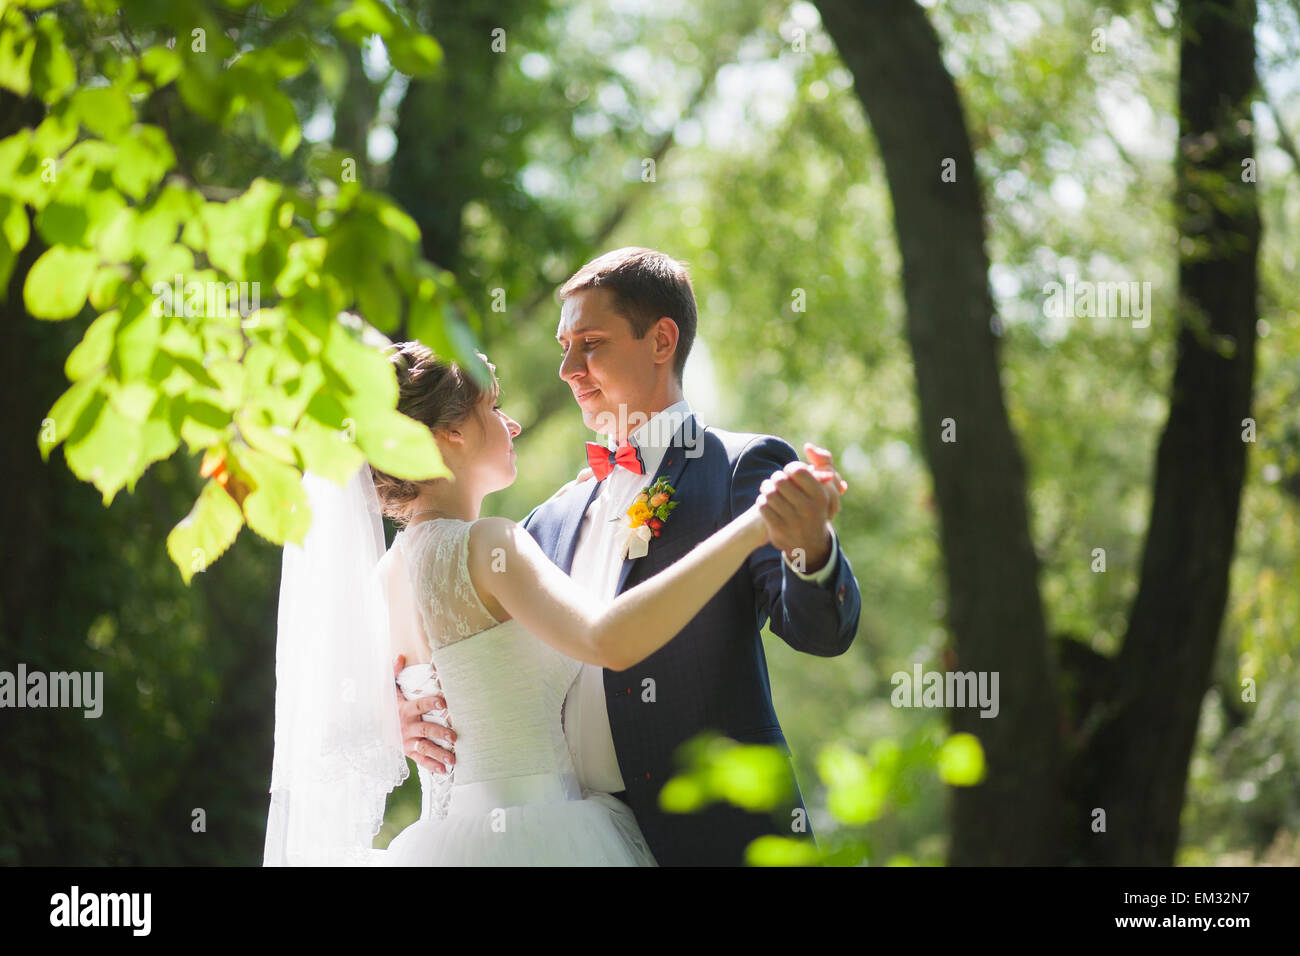 Glückliche Paare tanzen im grünen park Stockfoto